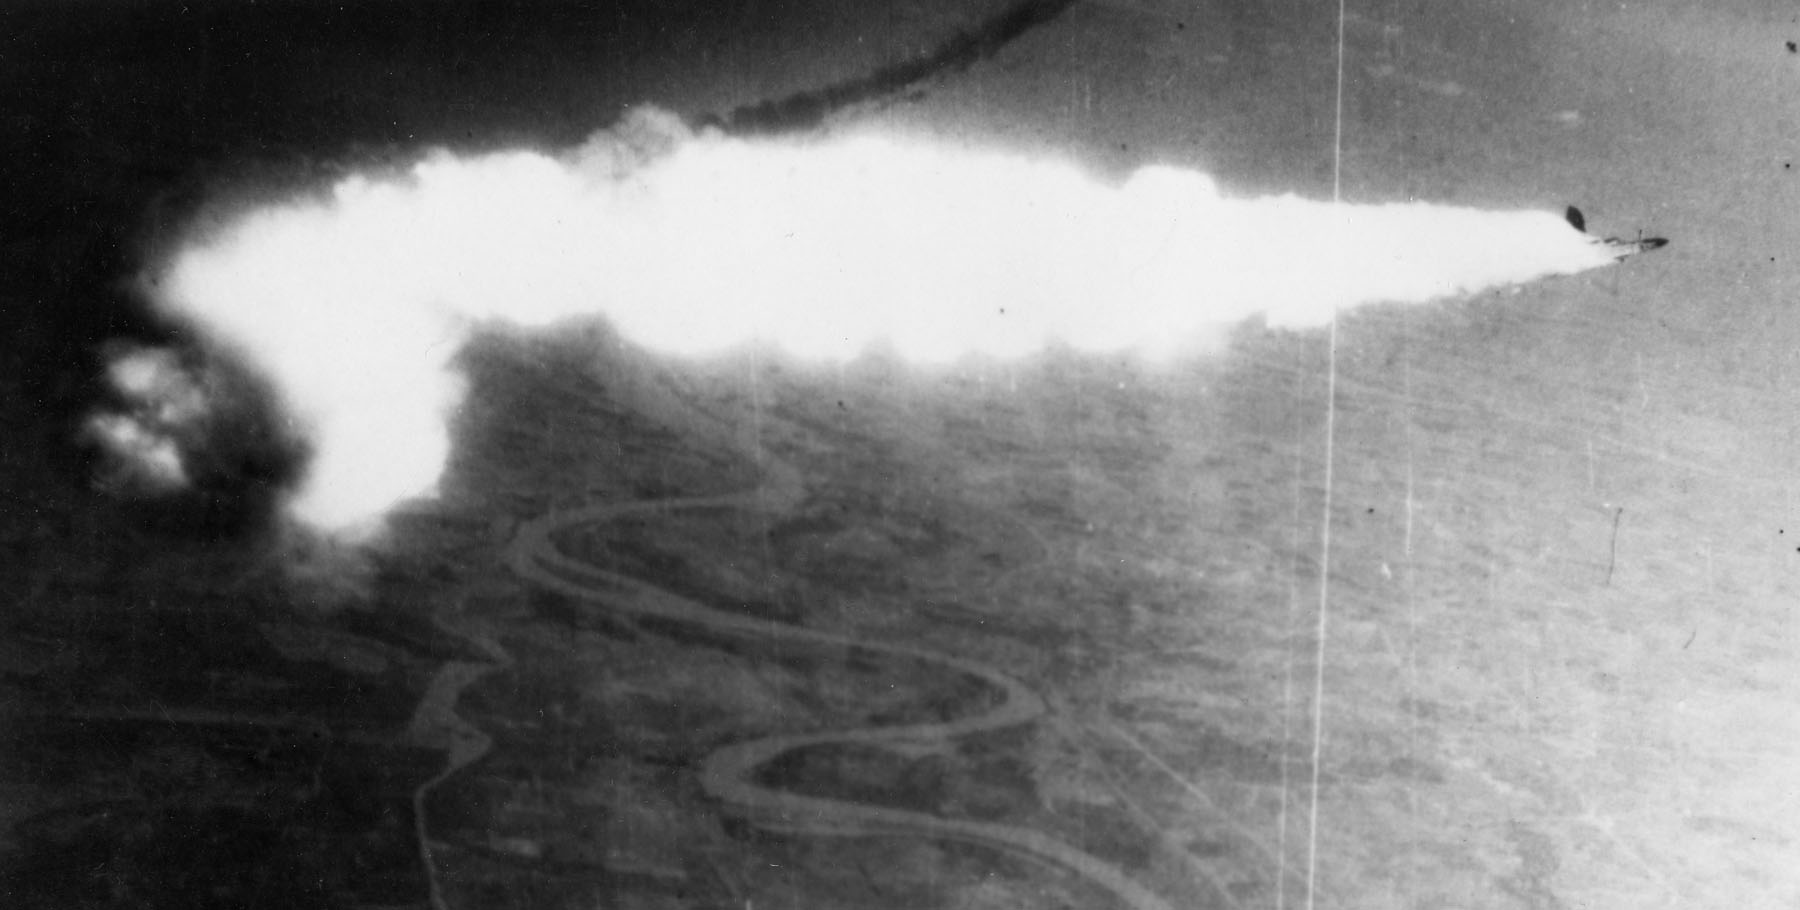 Un USAF RF-4C de reconocimiento es derribado por un misil SA-2, 12 de agosto de 1967, cerca de Hanoi, Vietnam. Los capitanes Edwin Atterberry y Thomas Parrott fueron capturados después de eyectar. Atterberry murió a manos de los norvietnamitas en un intento de fuga y Parrott fue liberado al final de la guerra. Fuente: U.S Air Force.